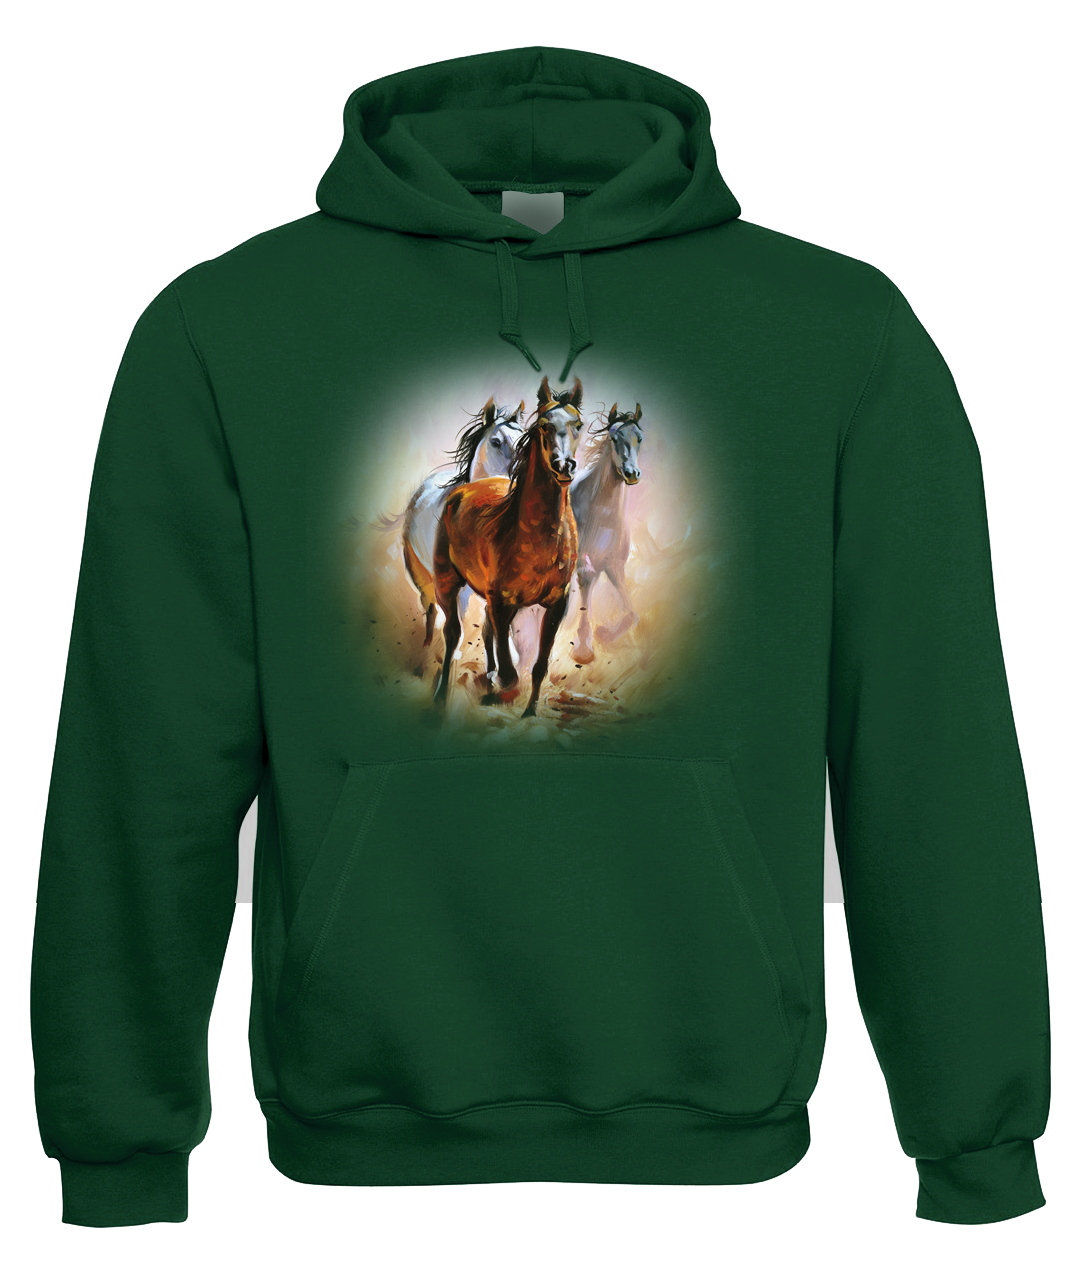 Mikina s koněm - Malované koně Velikost: L, Barva: Zelená lahvová